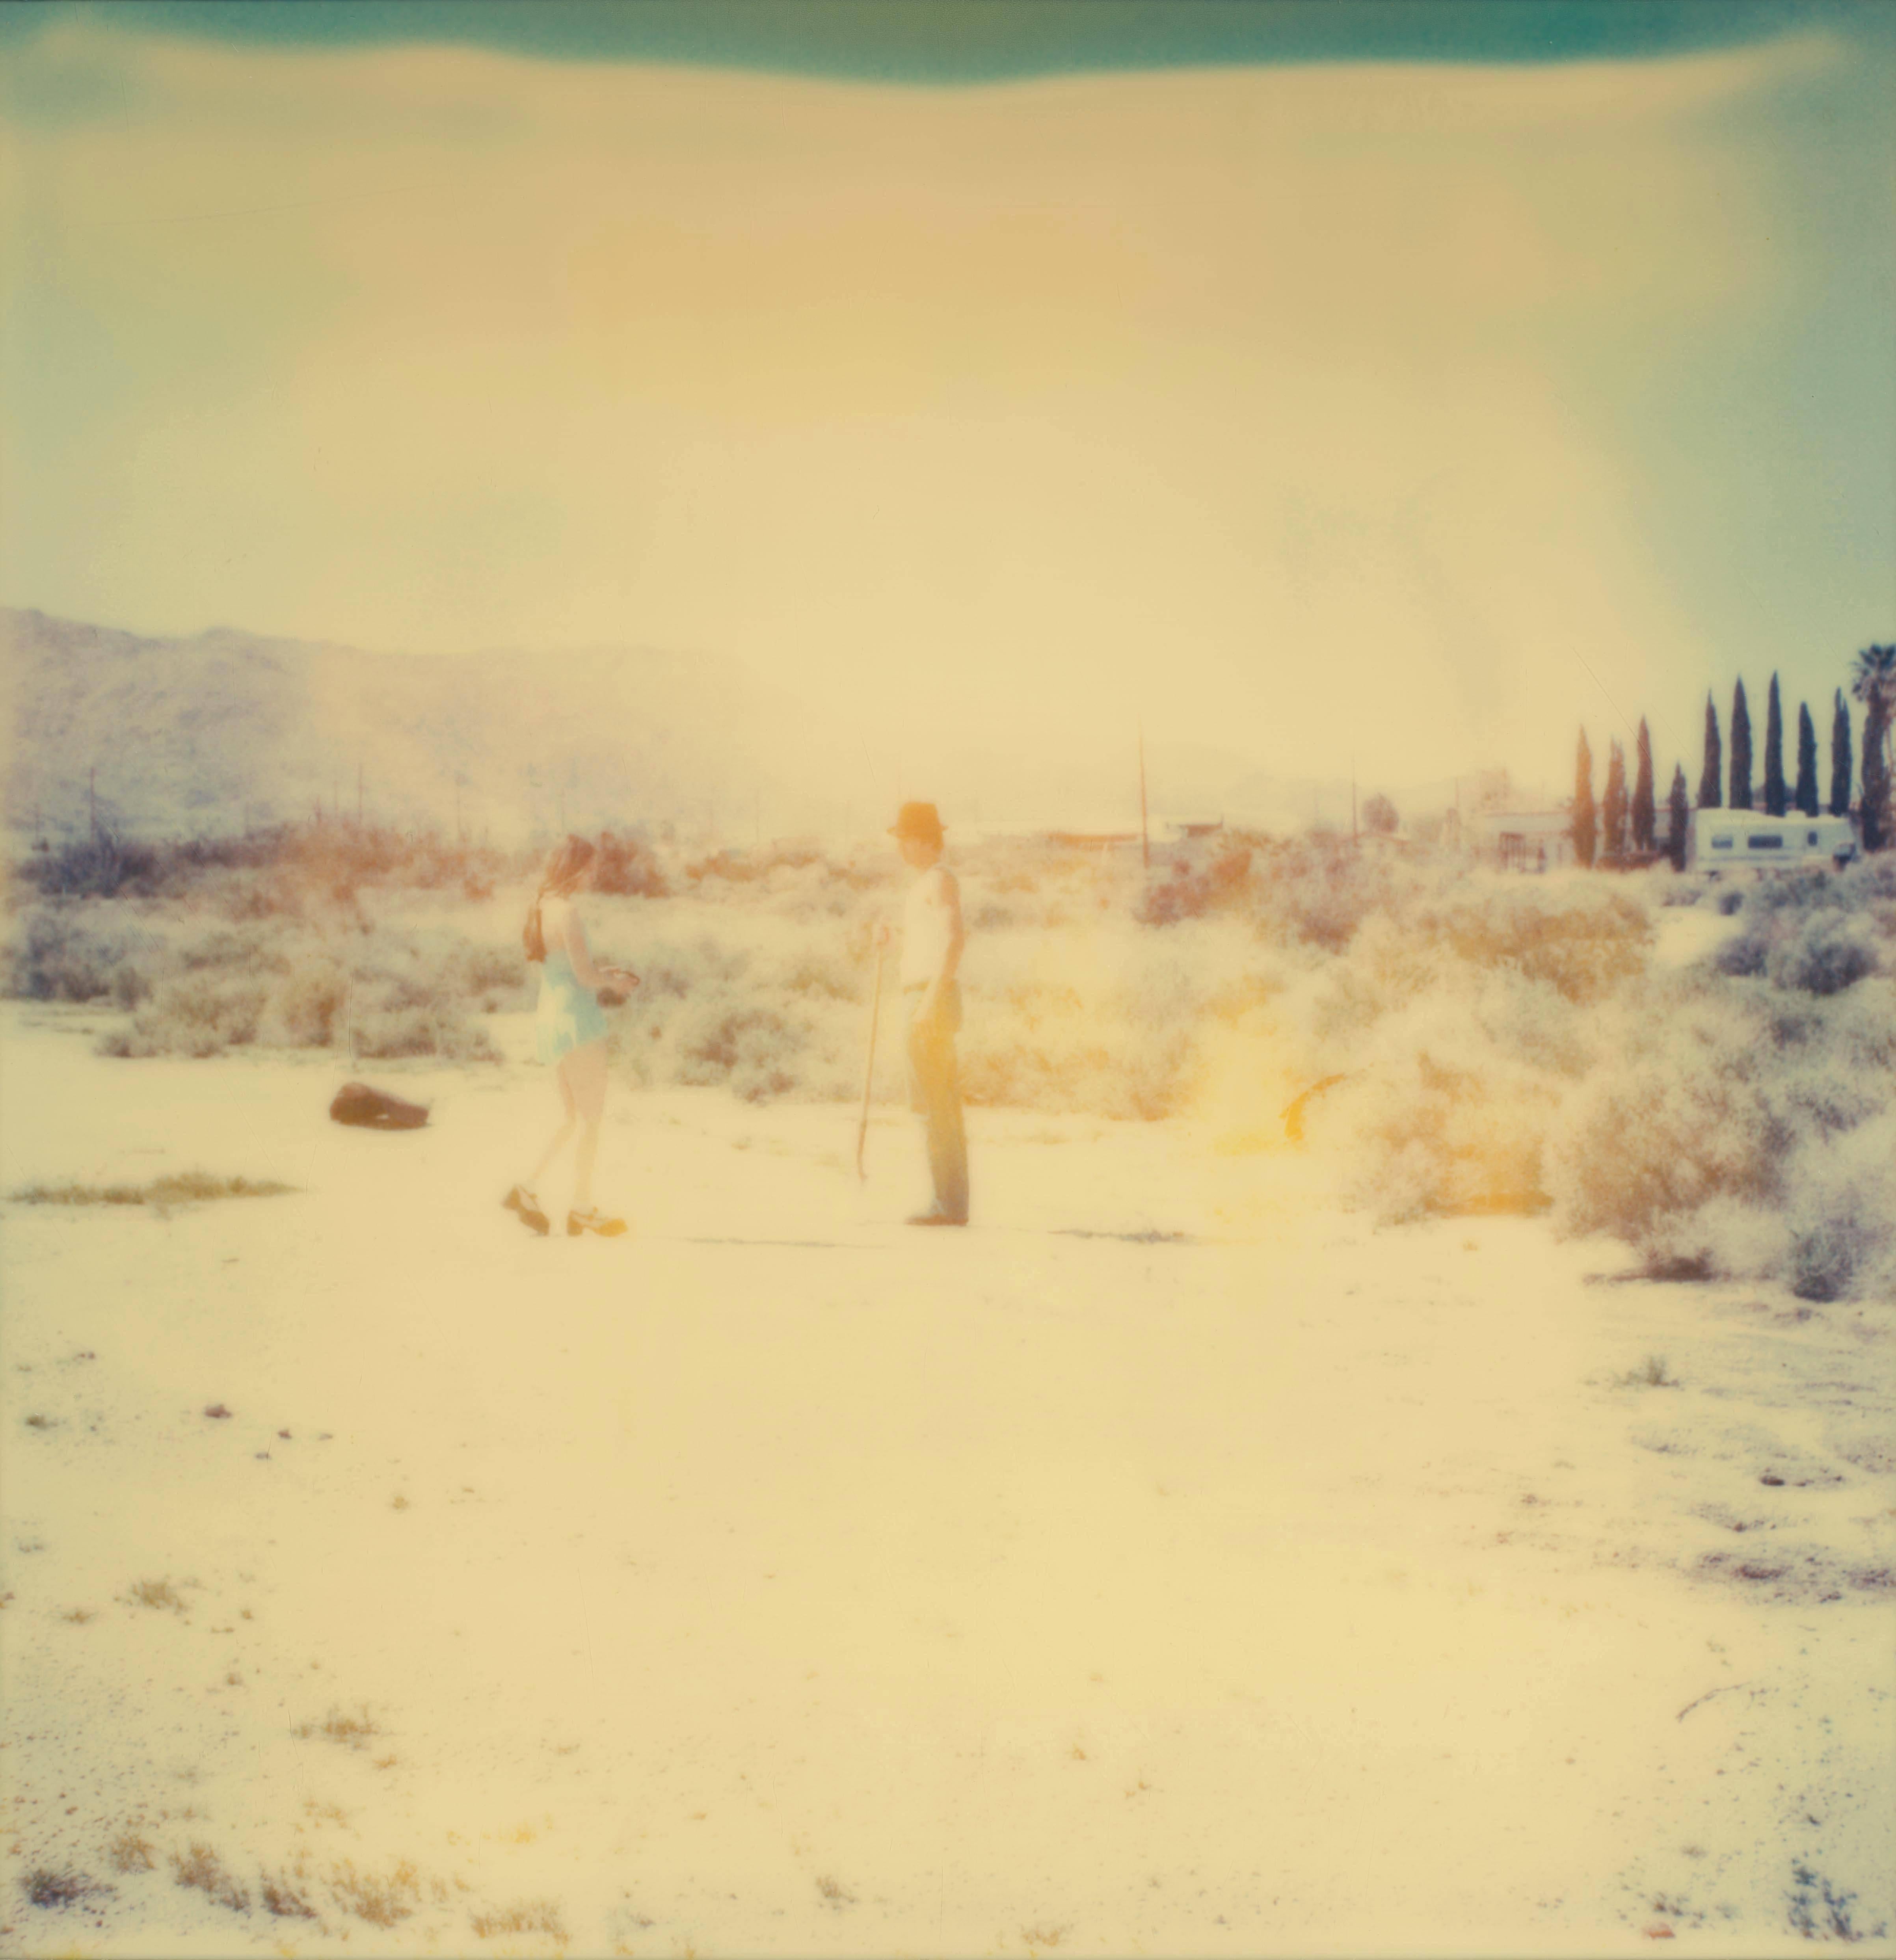 Stefanie Schneider Landscape Photograph – Crow Burial - Zeitgenössisch, Polaroid, Analog, Fotografie, figürlich, 